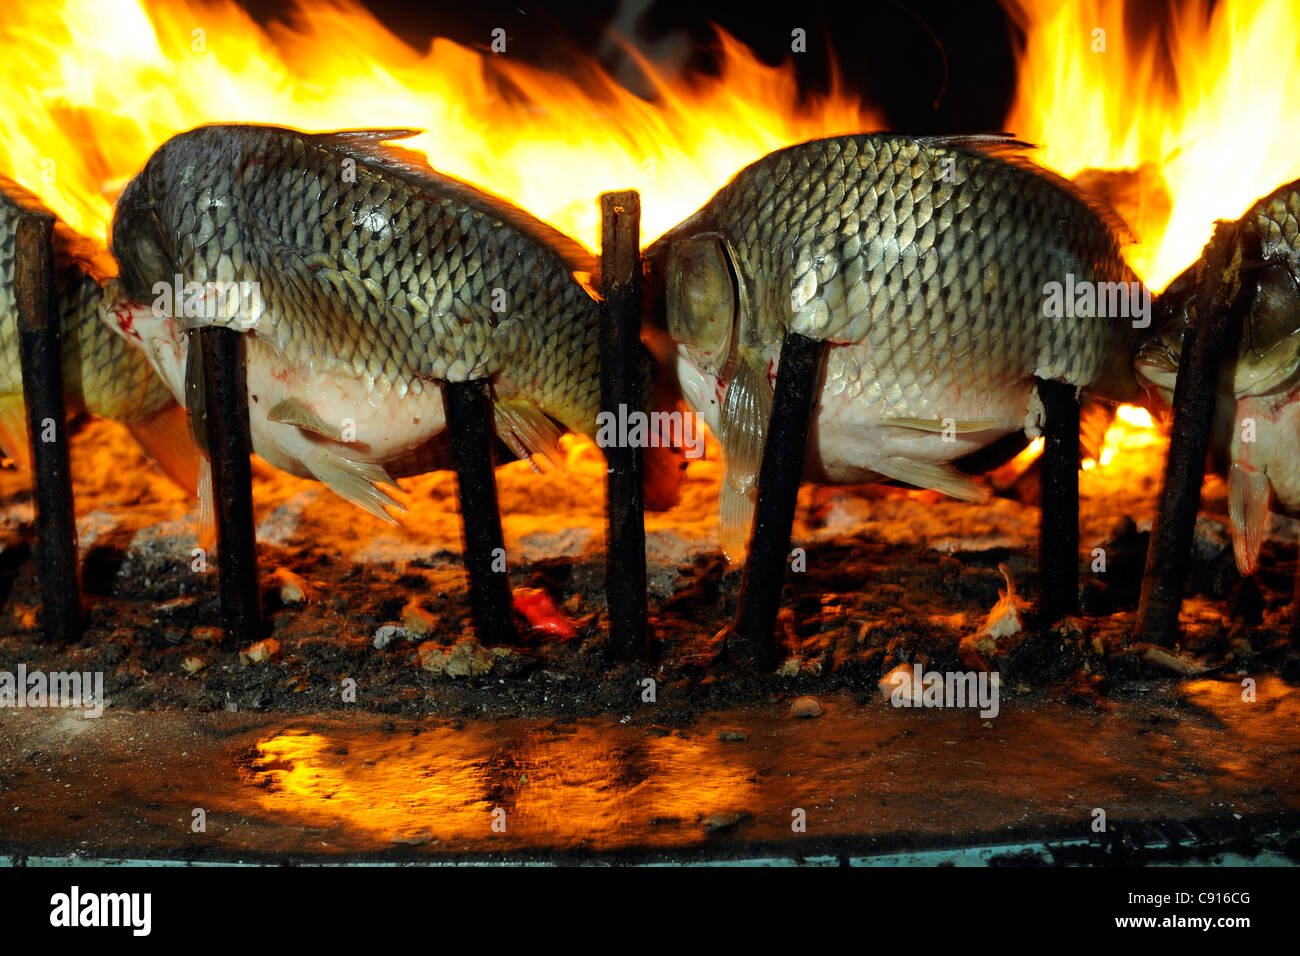 Irak, Baghdad, Masgouf eine Fischspezialität Baghdadi serviert in einer Reihe von Restaurants an den Ufern des Tigris Abu Nawas Strasse Stockfoto